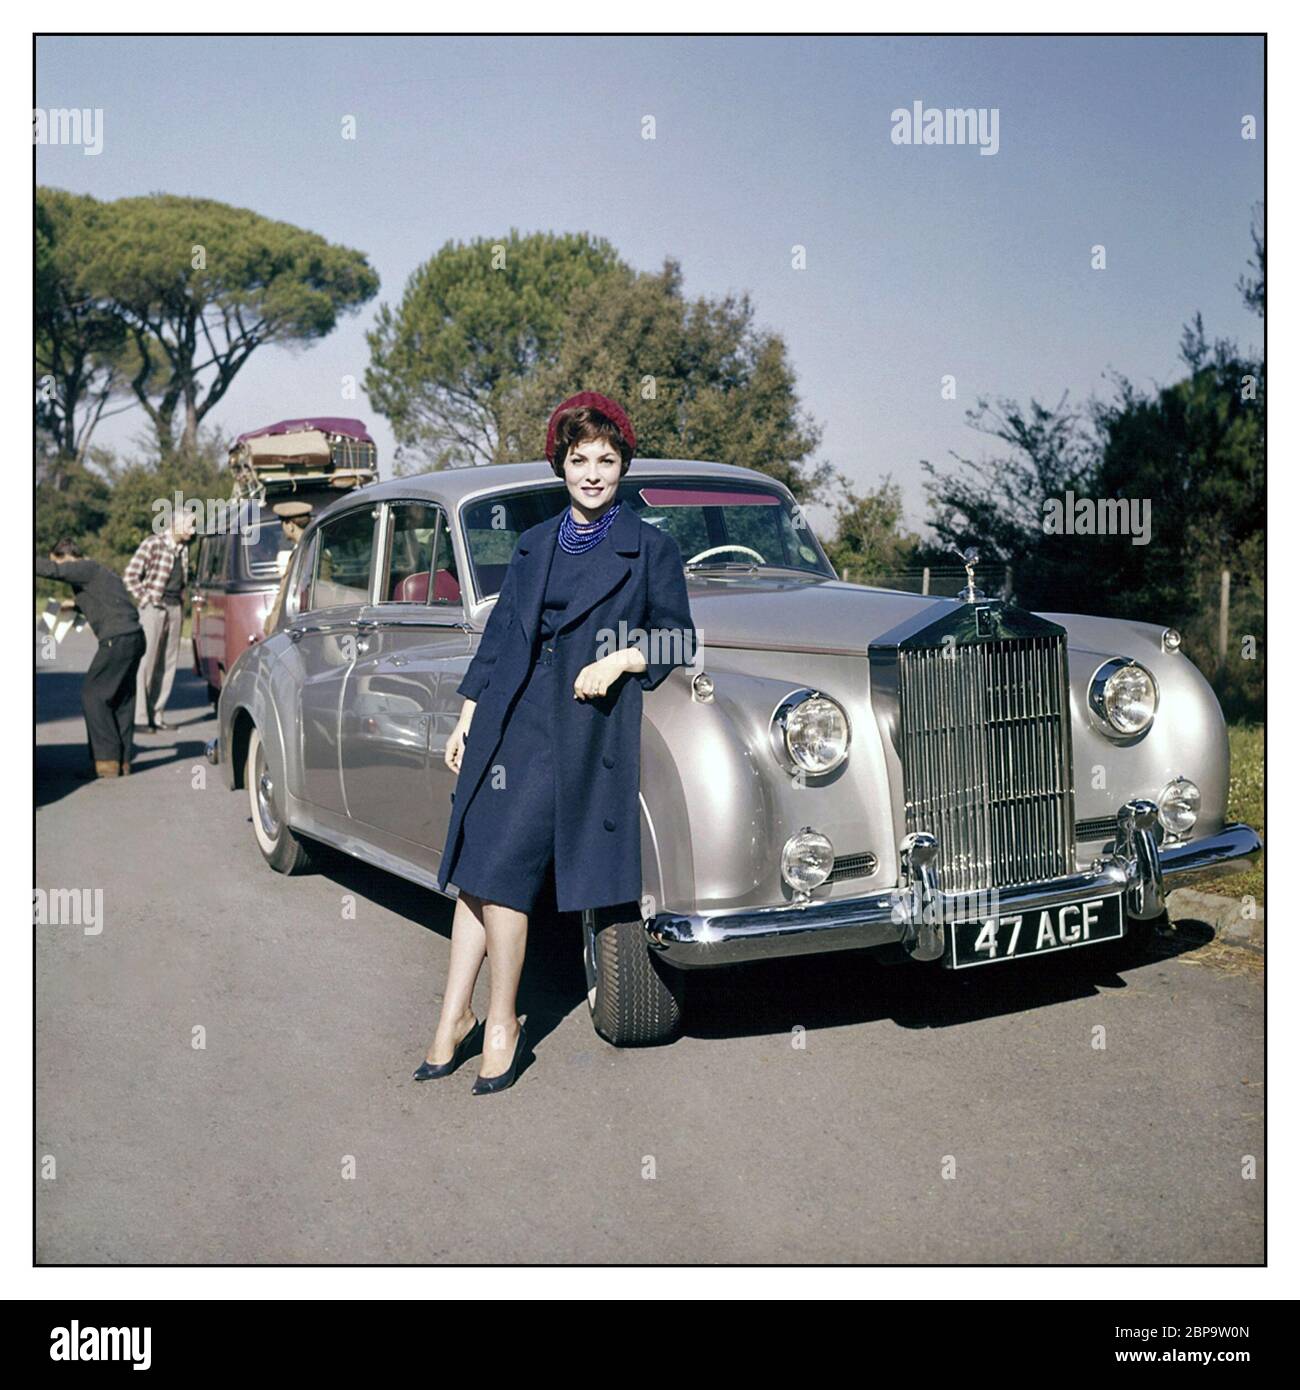 Vintage Rolls-Royce Silver Cloud I avec la propriétaire Gina Lollobrigida sur un lieu de film, Gina Lollobrigida, est une actrice, photojournaliste et sculpteur italien. Elle était l'une des actrices européennes les plus belles et les plus élégantes des années 1950/1960 Banque D'Images